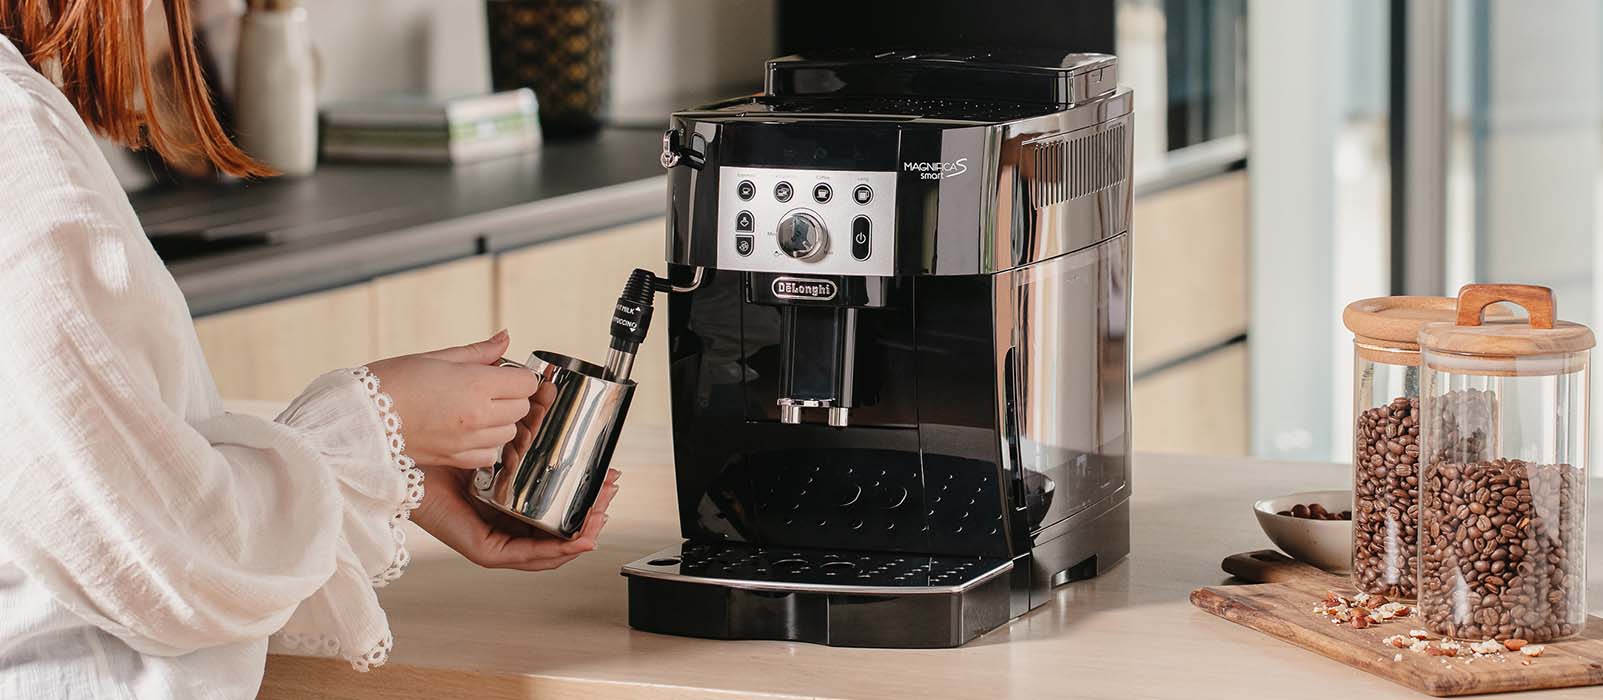 DELONGHI Machine à café expresso avec broyeur ECAM290.61.B - Noir pas cher  